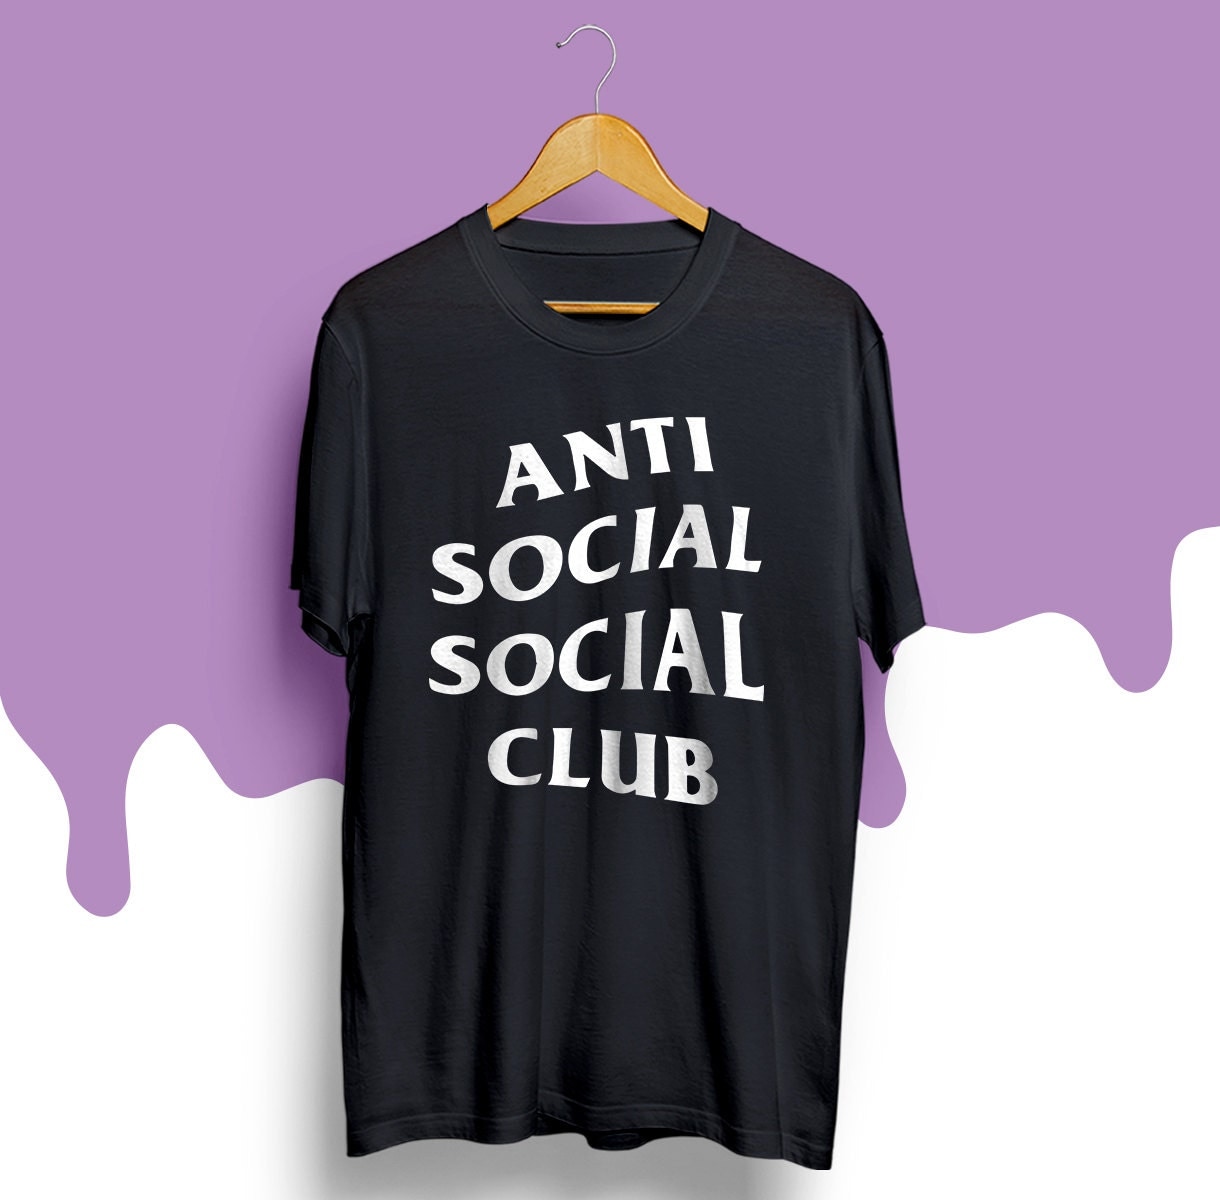 Anti Social Social Club t-shirt ASSC shirt The club by BuyOrCry